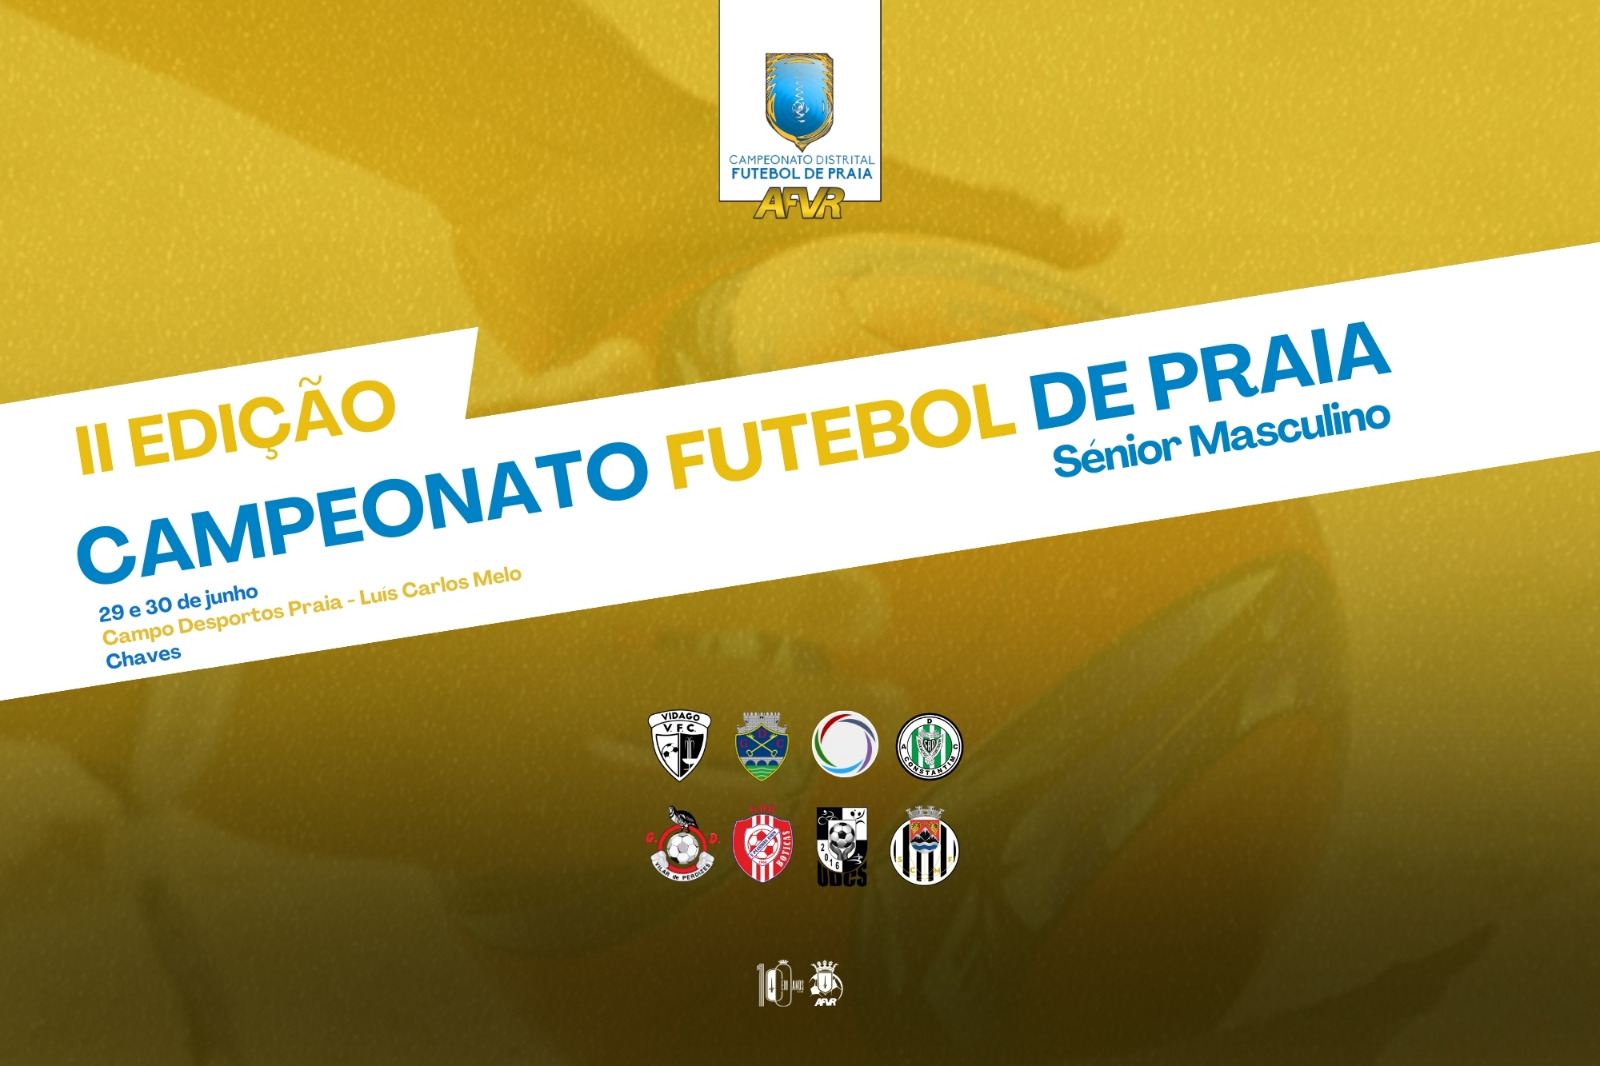 II Edição do Campeonato Distrital de Futebol Praia AFVR